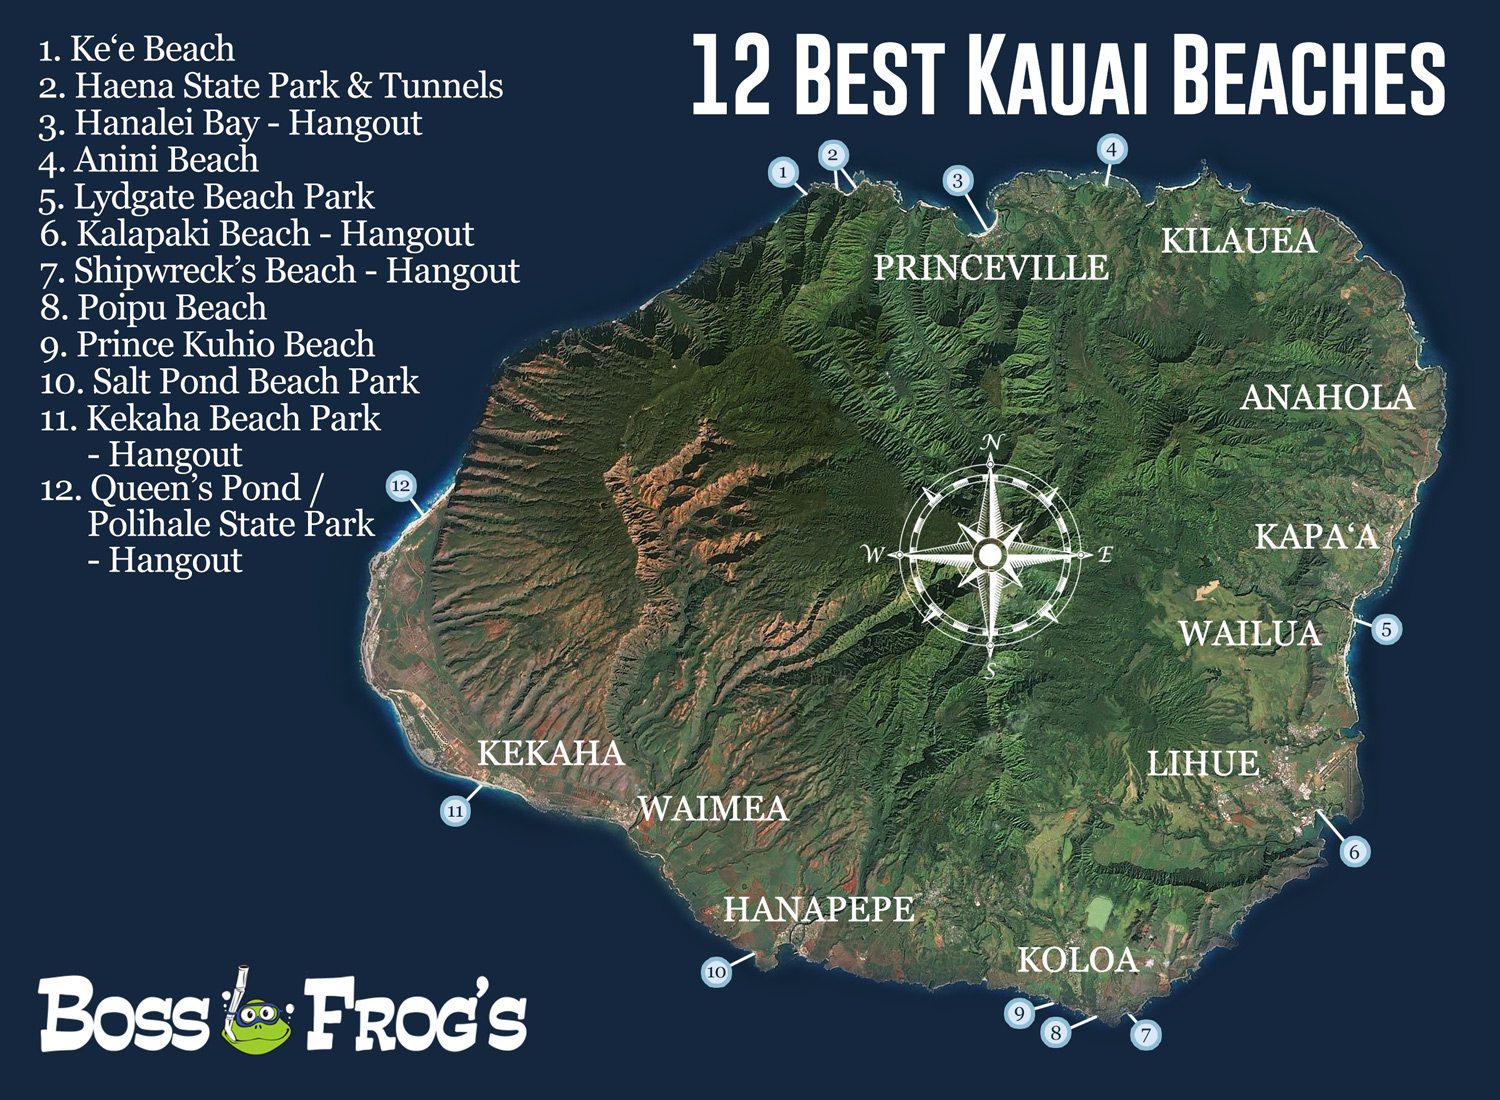 Best Kauai Beaches | Boss Frog's Rentals Hawaii